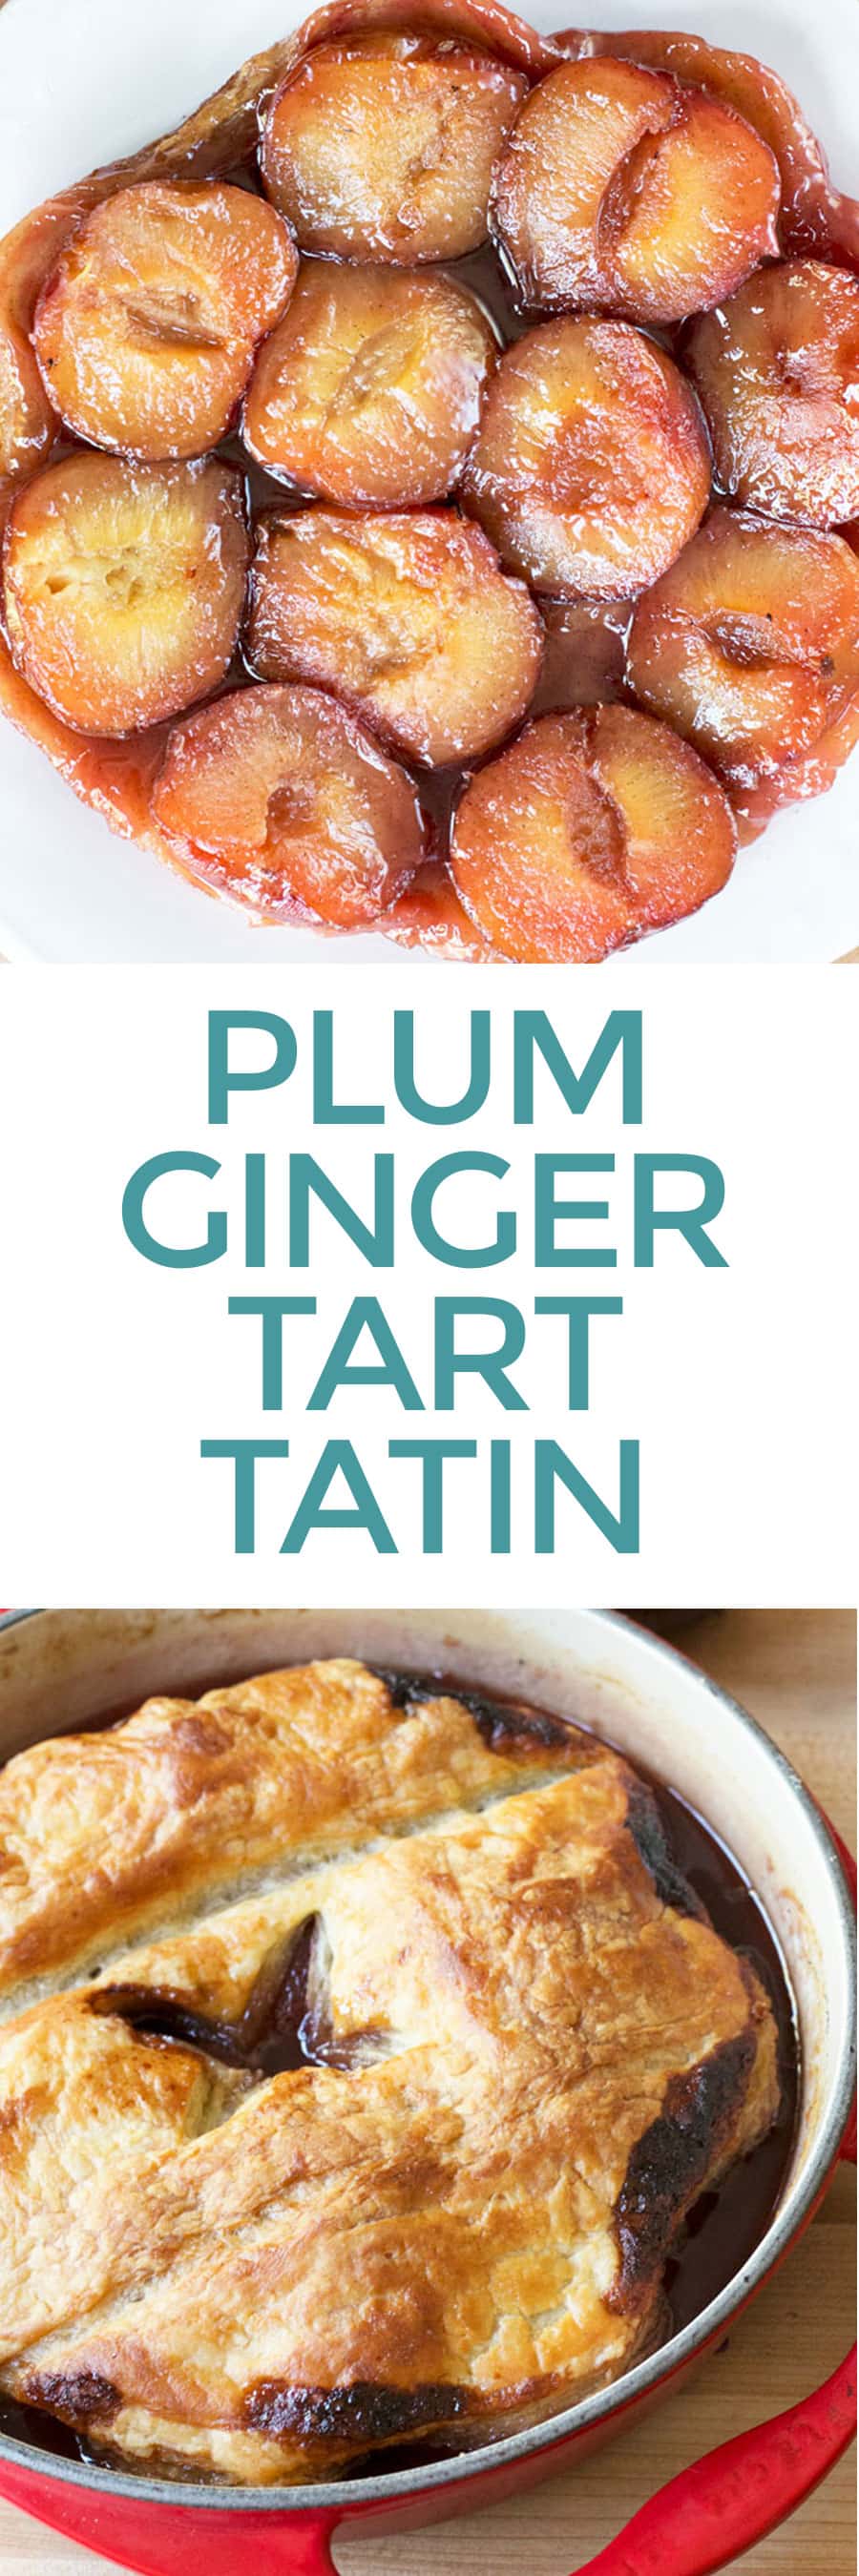 Plum Ginger Tart Tatin + A Le Creuset Giveaway! | cakenknife.com